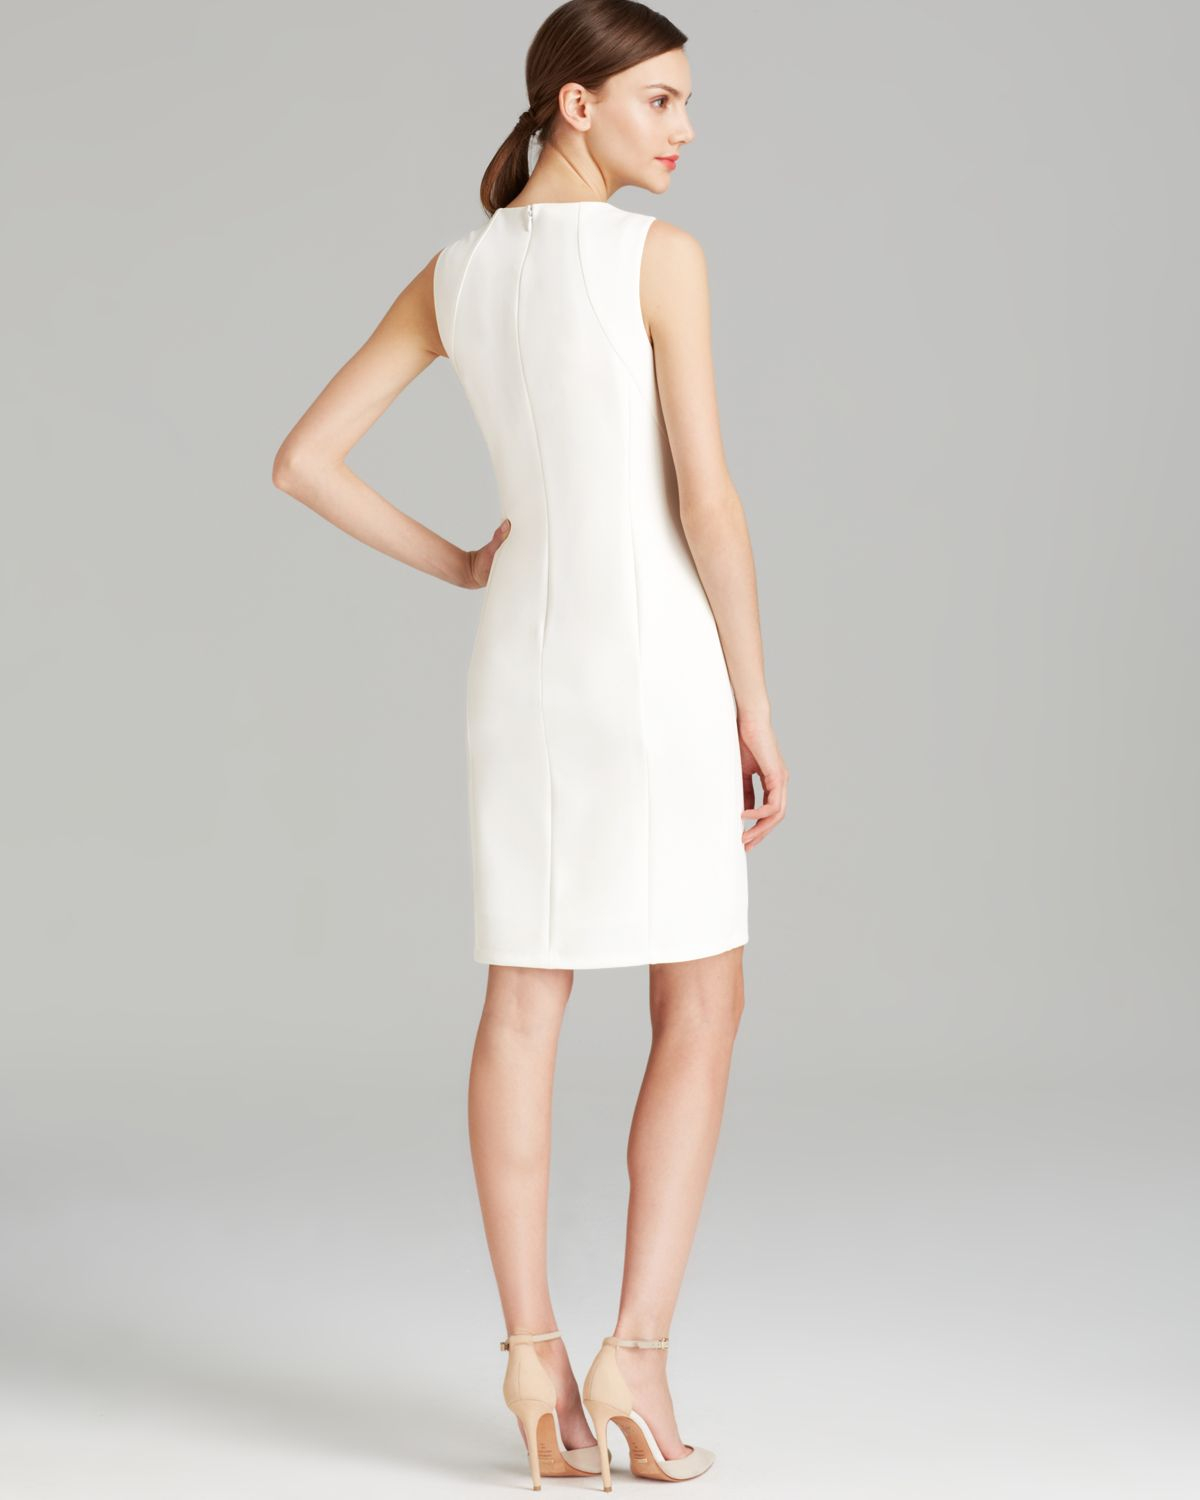 anne klein white dress